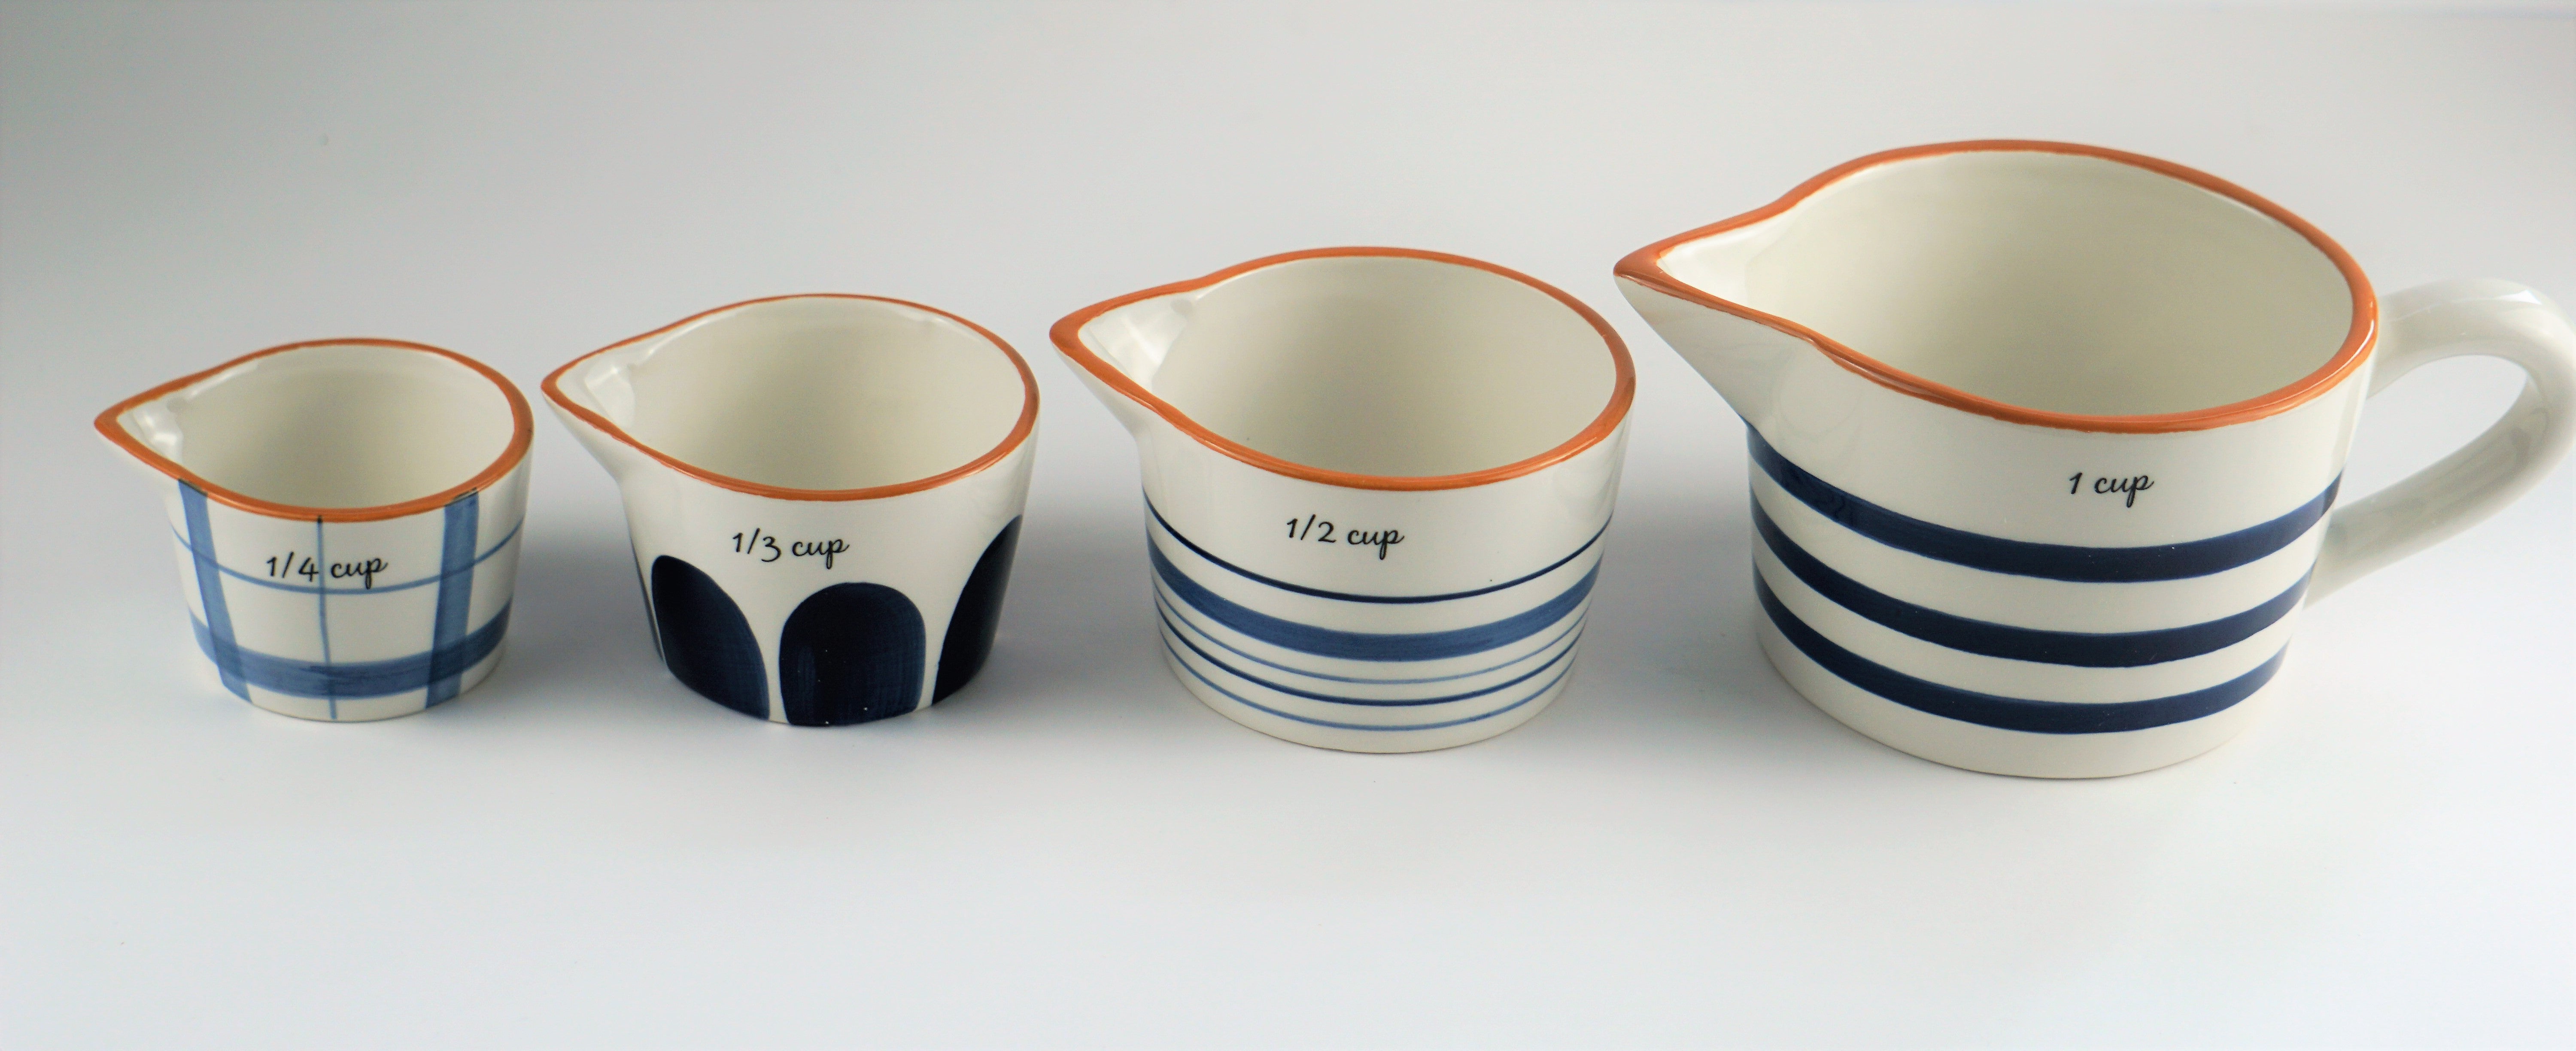 Mesu Porcelain Measuring Bowls Portion Control Set of 3